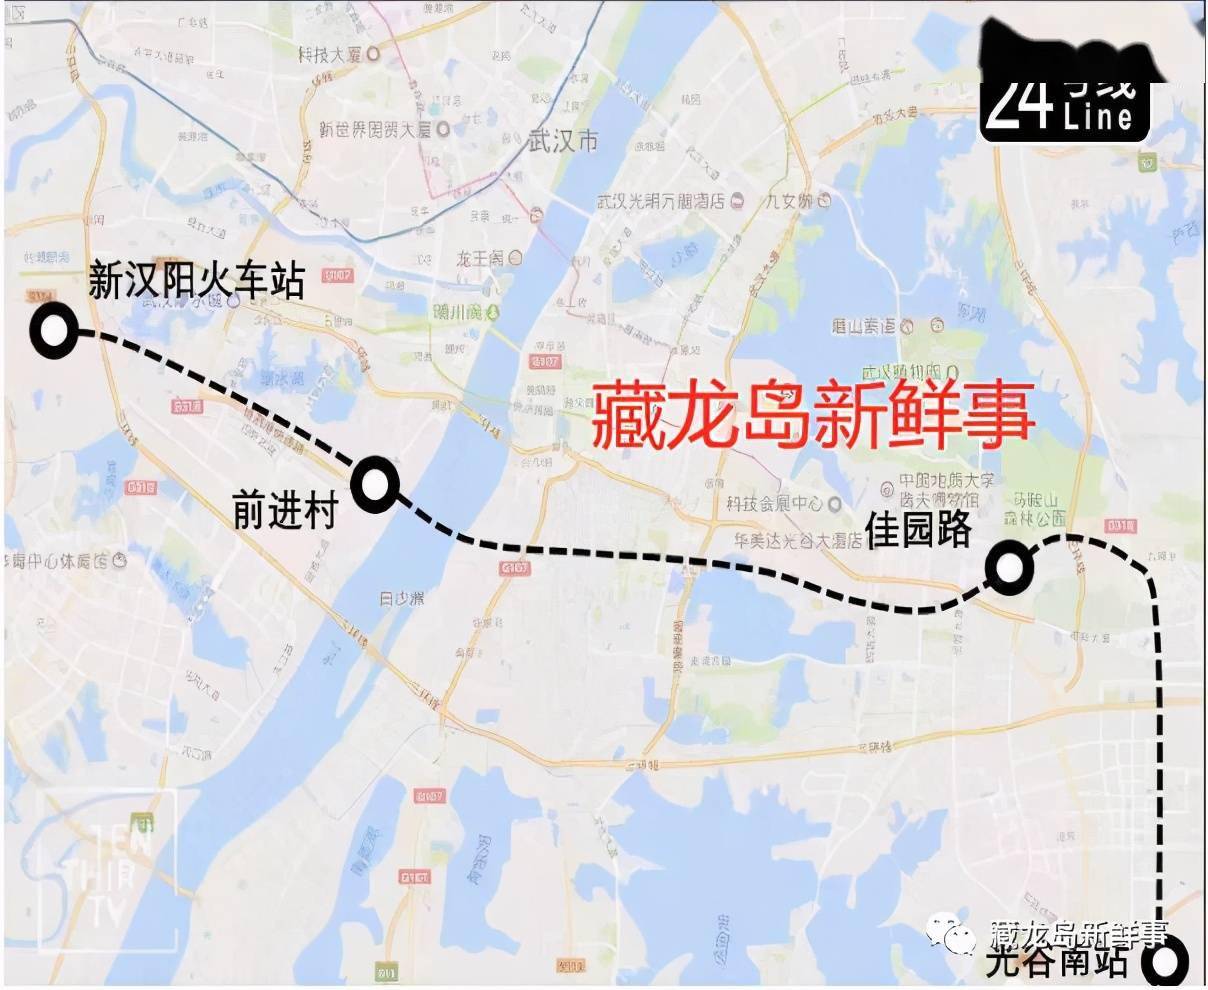 以批复为准)part 2地铁30号线线路走向:黄家湖至鄂州红莲湖区域